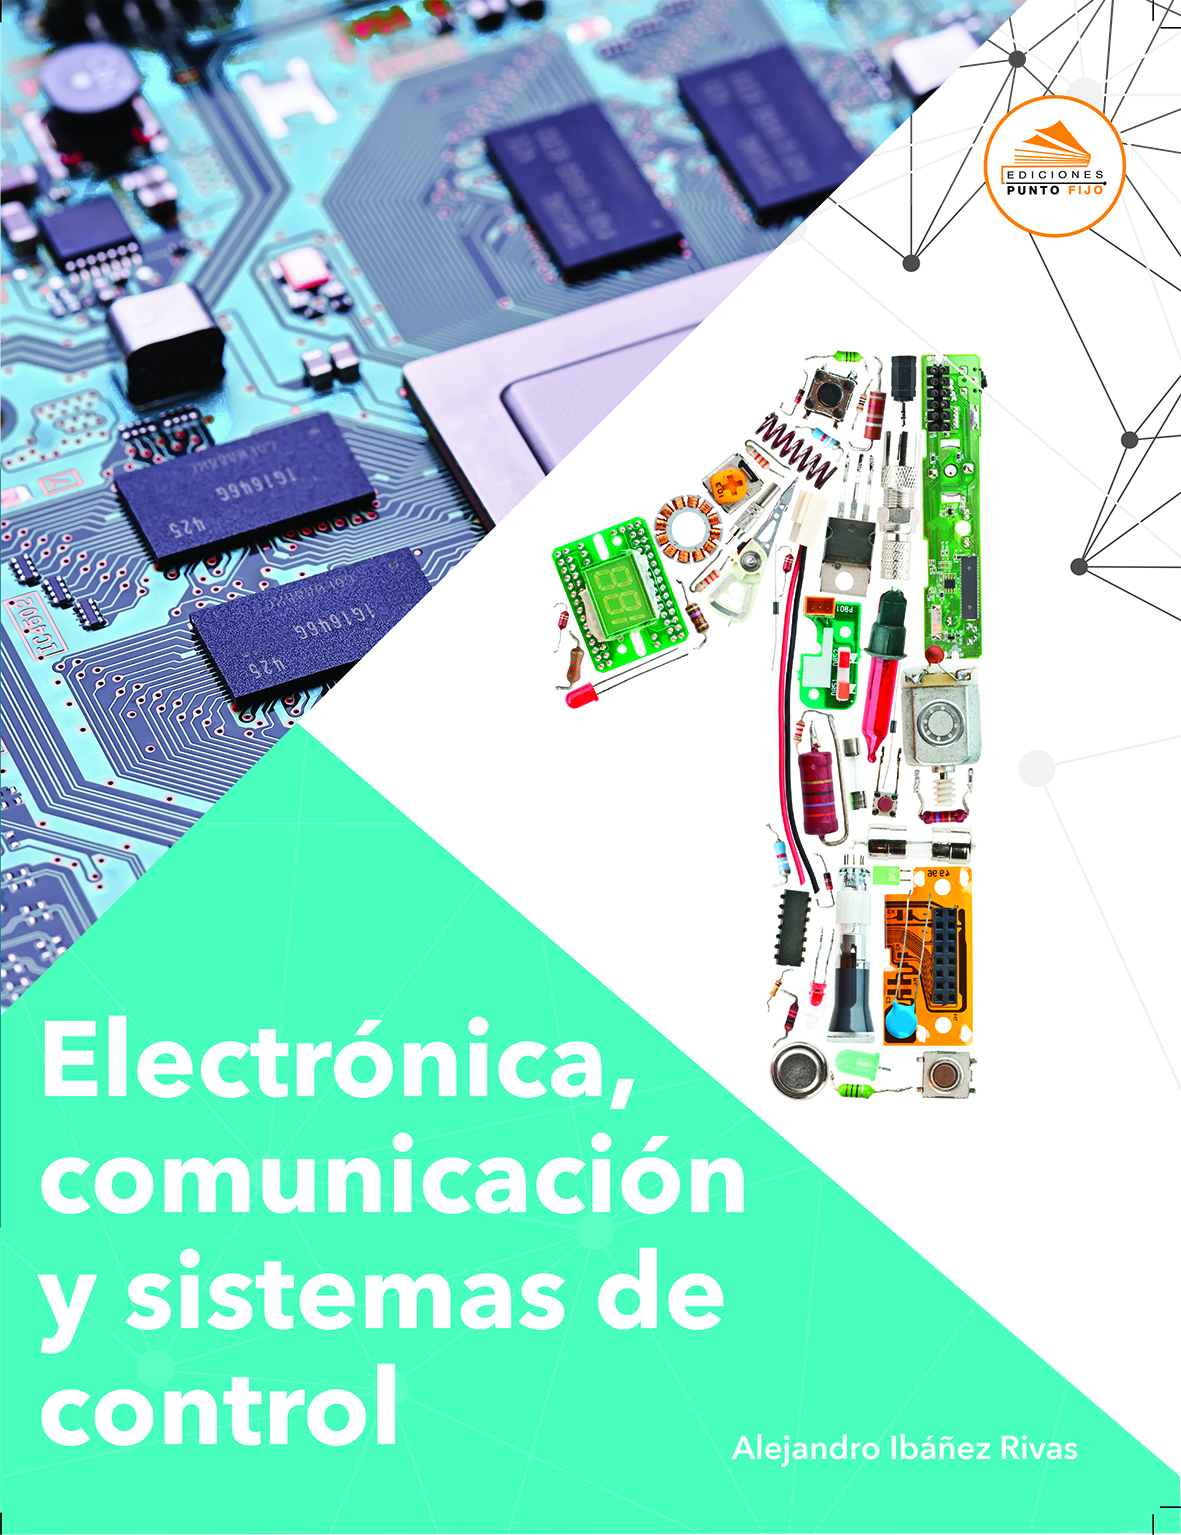 Electrónica Comunicación Y Sistemas De Control 1 Ediciones Punto Fijo